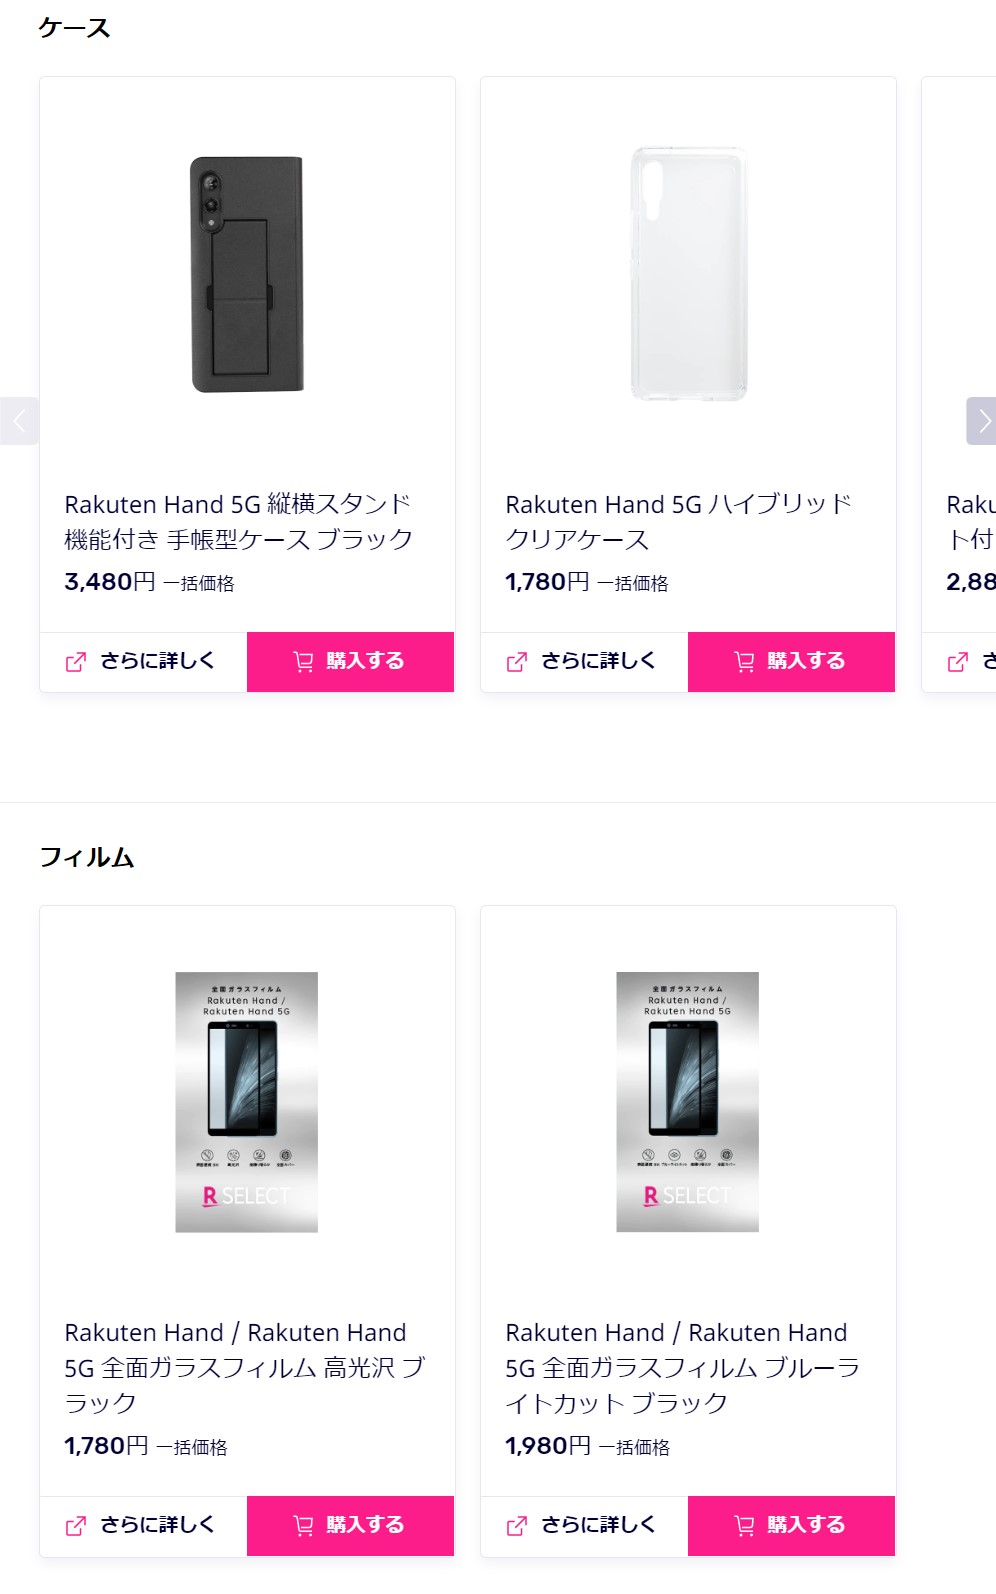 Rakuten Hand 5Gはケースやフィルムをセット購入できる